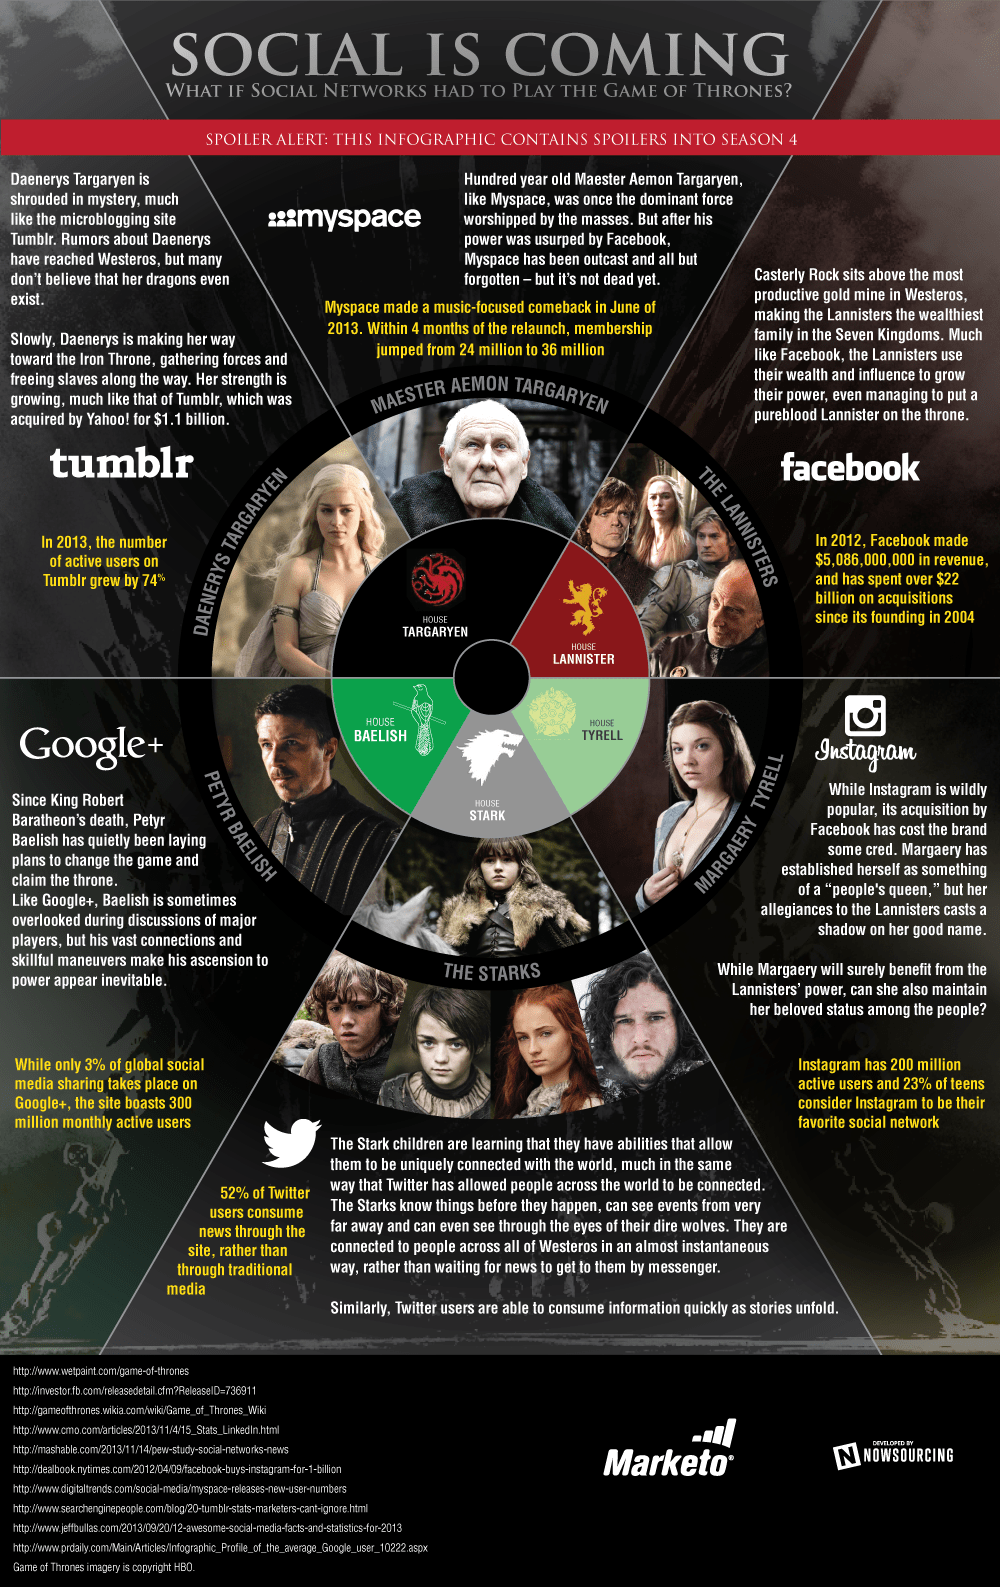 Qual o paralelo podemos traçar entre Game of Thrones e as mídias sociais?